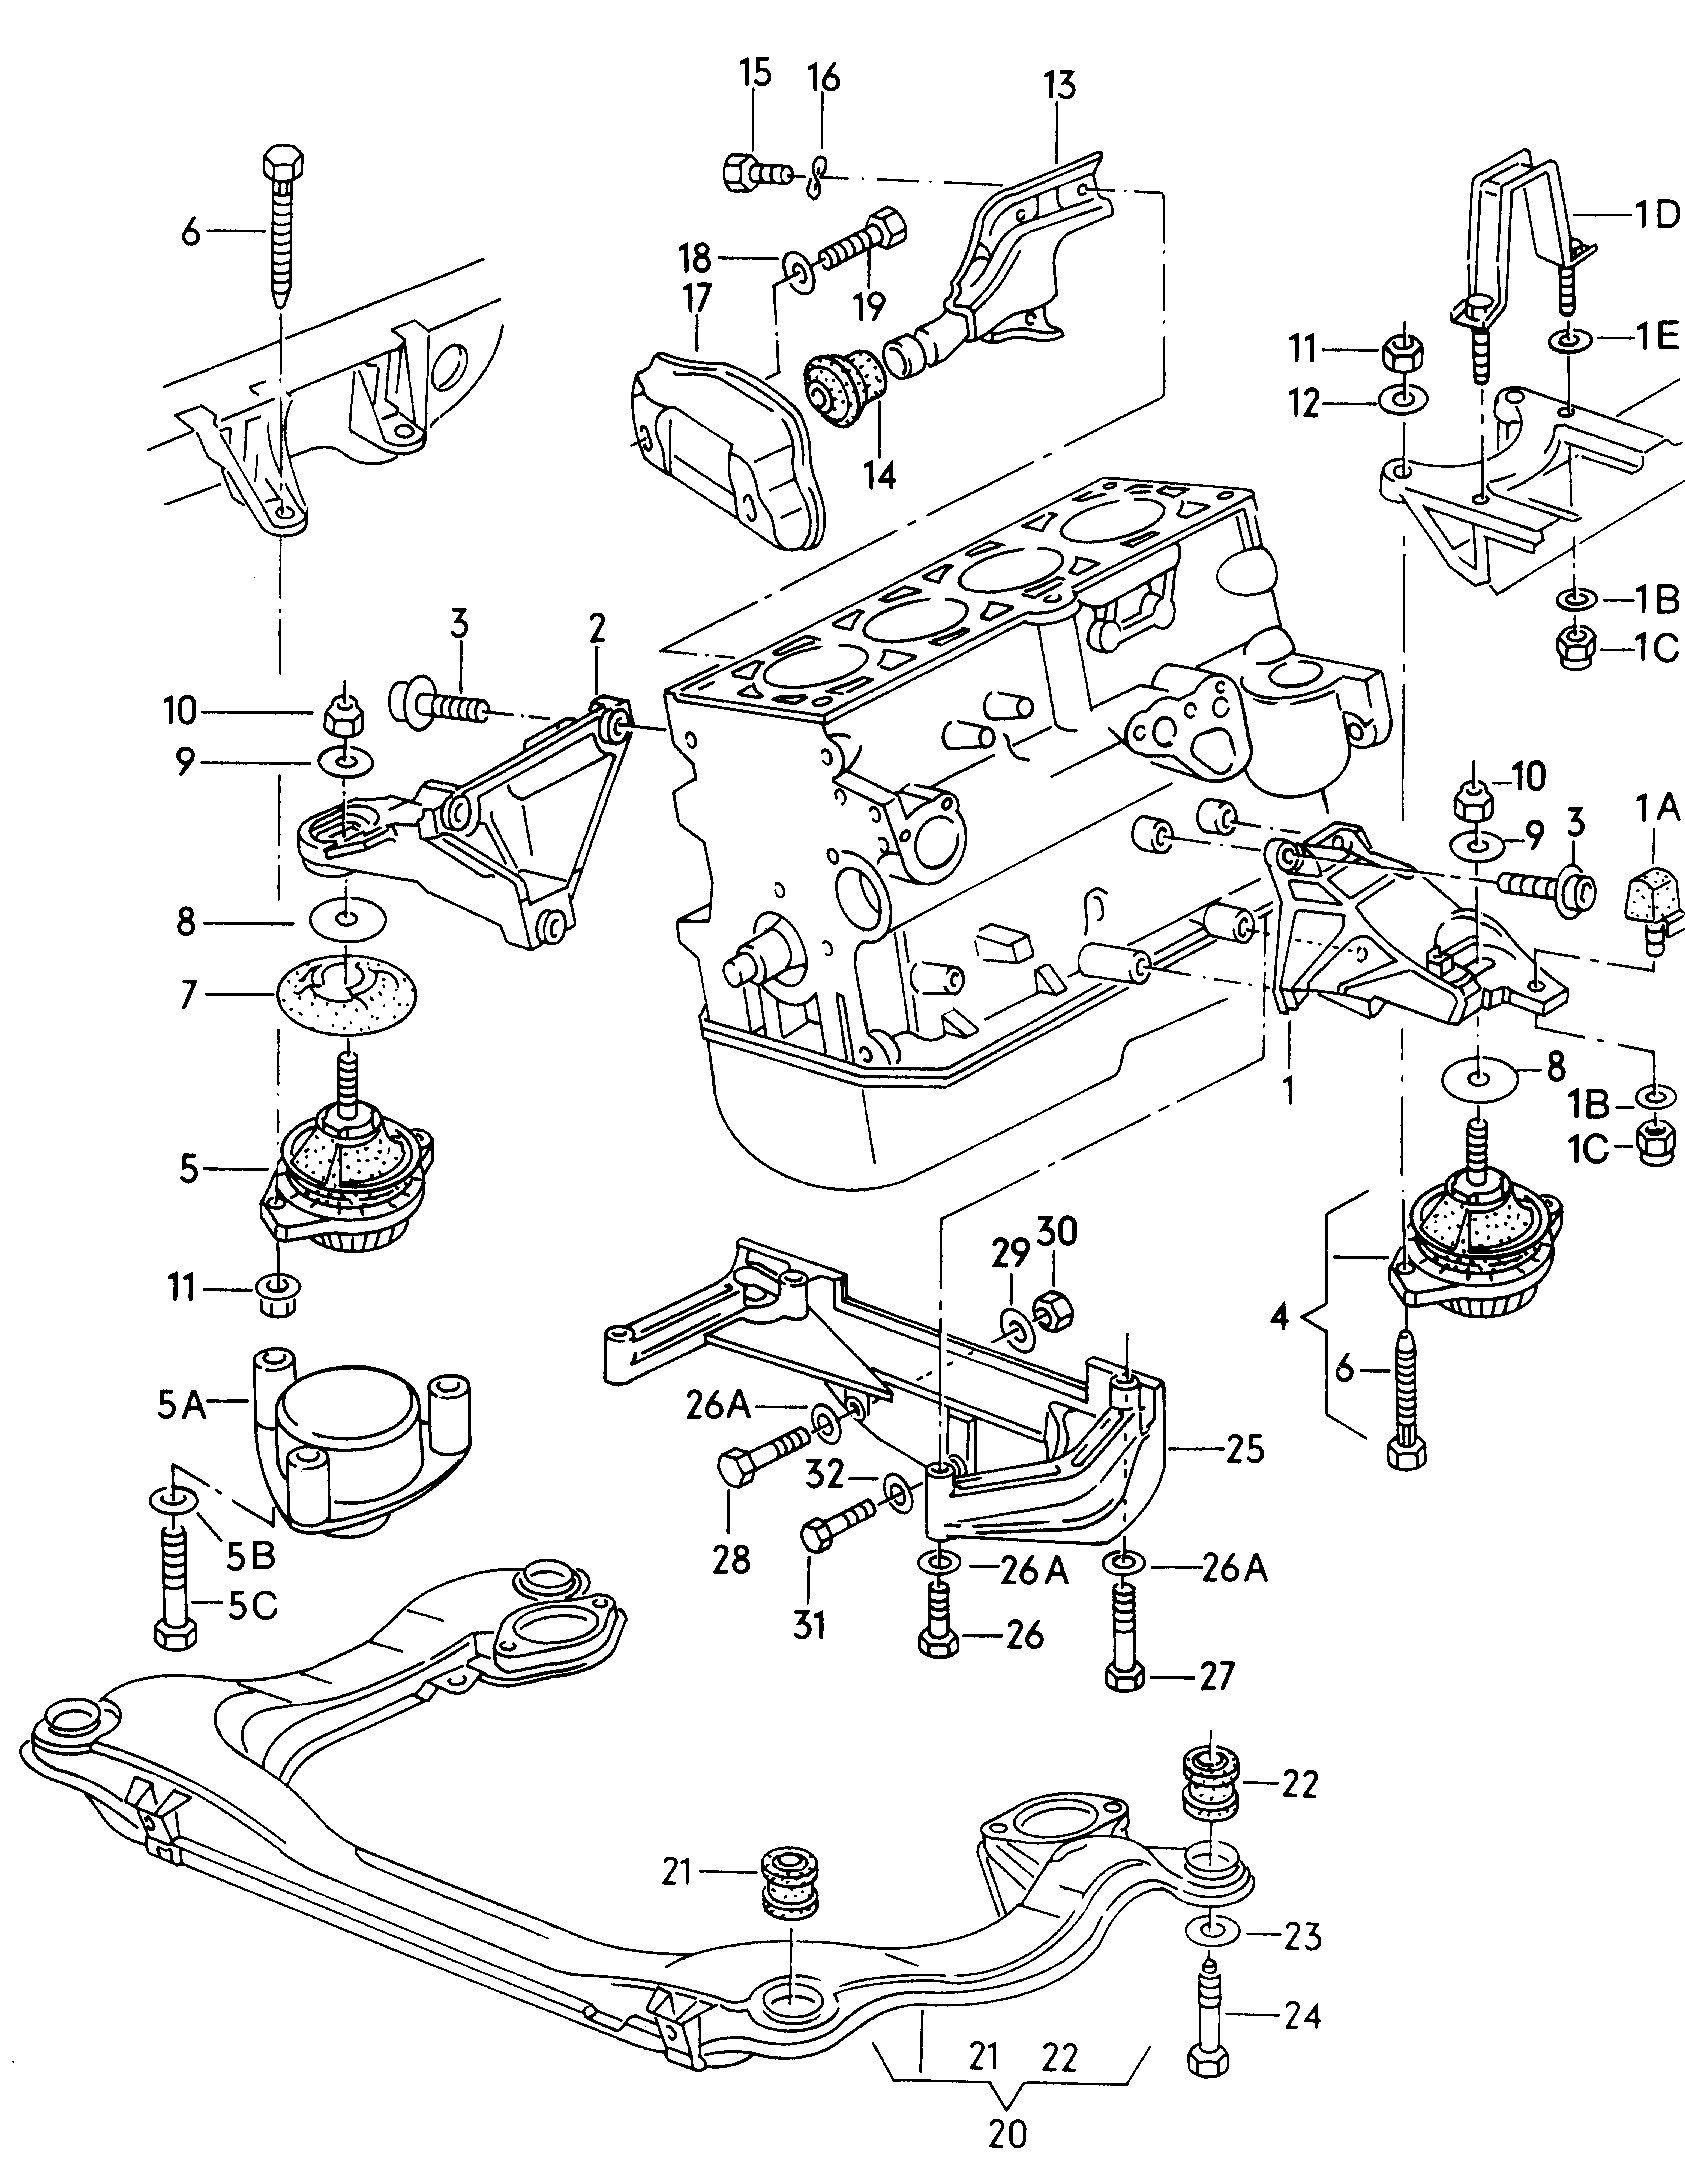 Befestigungsteile für Motor 1,8-2,0Ltr. - Audi Cabriolet - aca